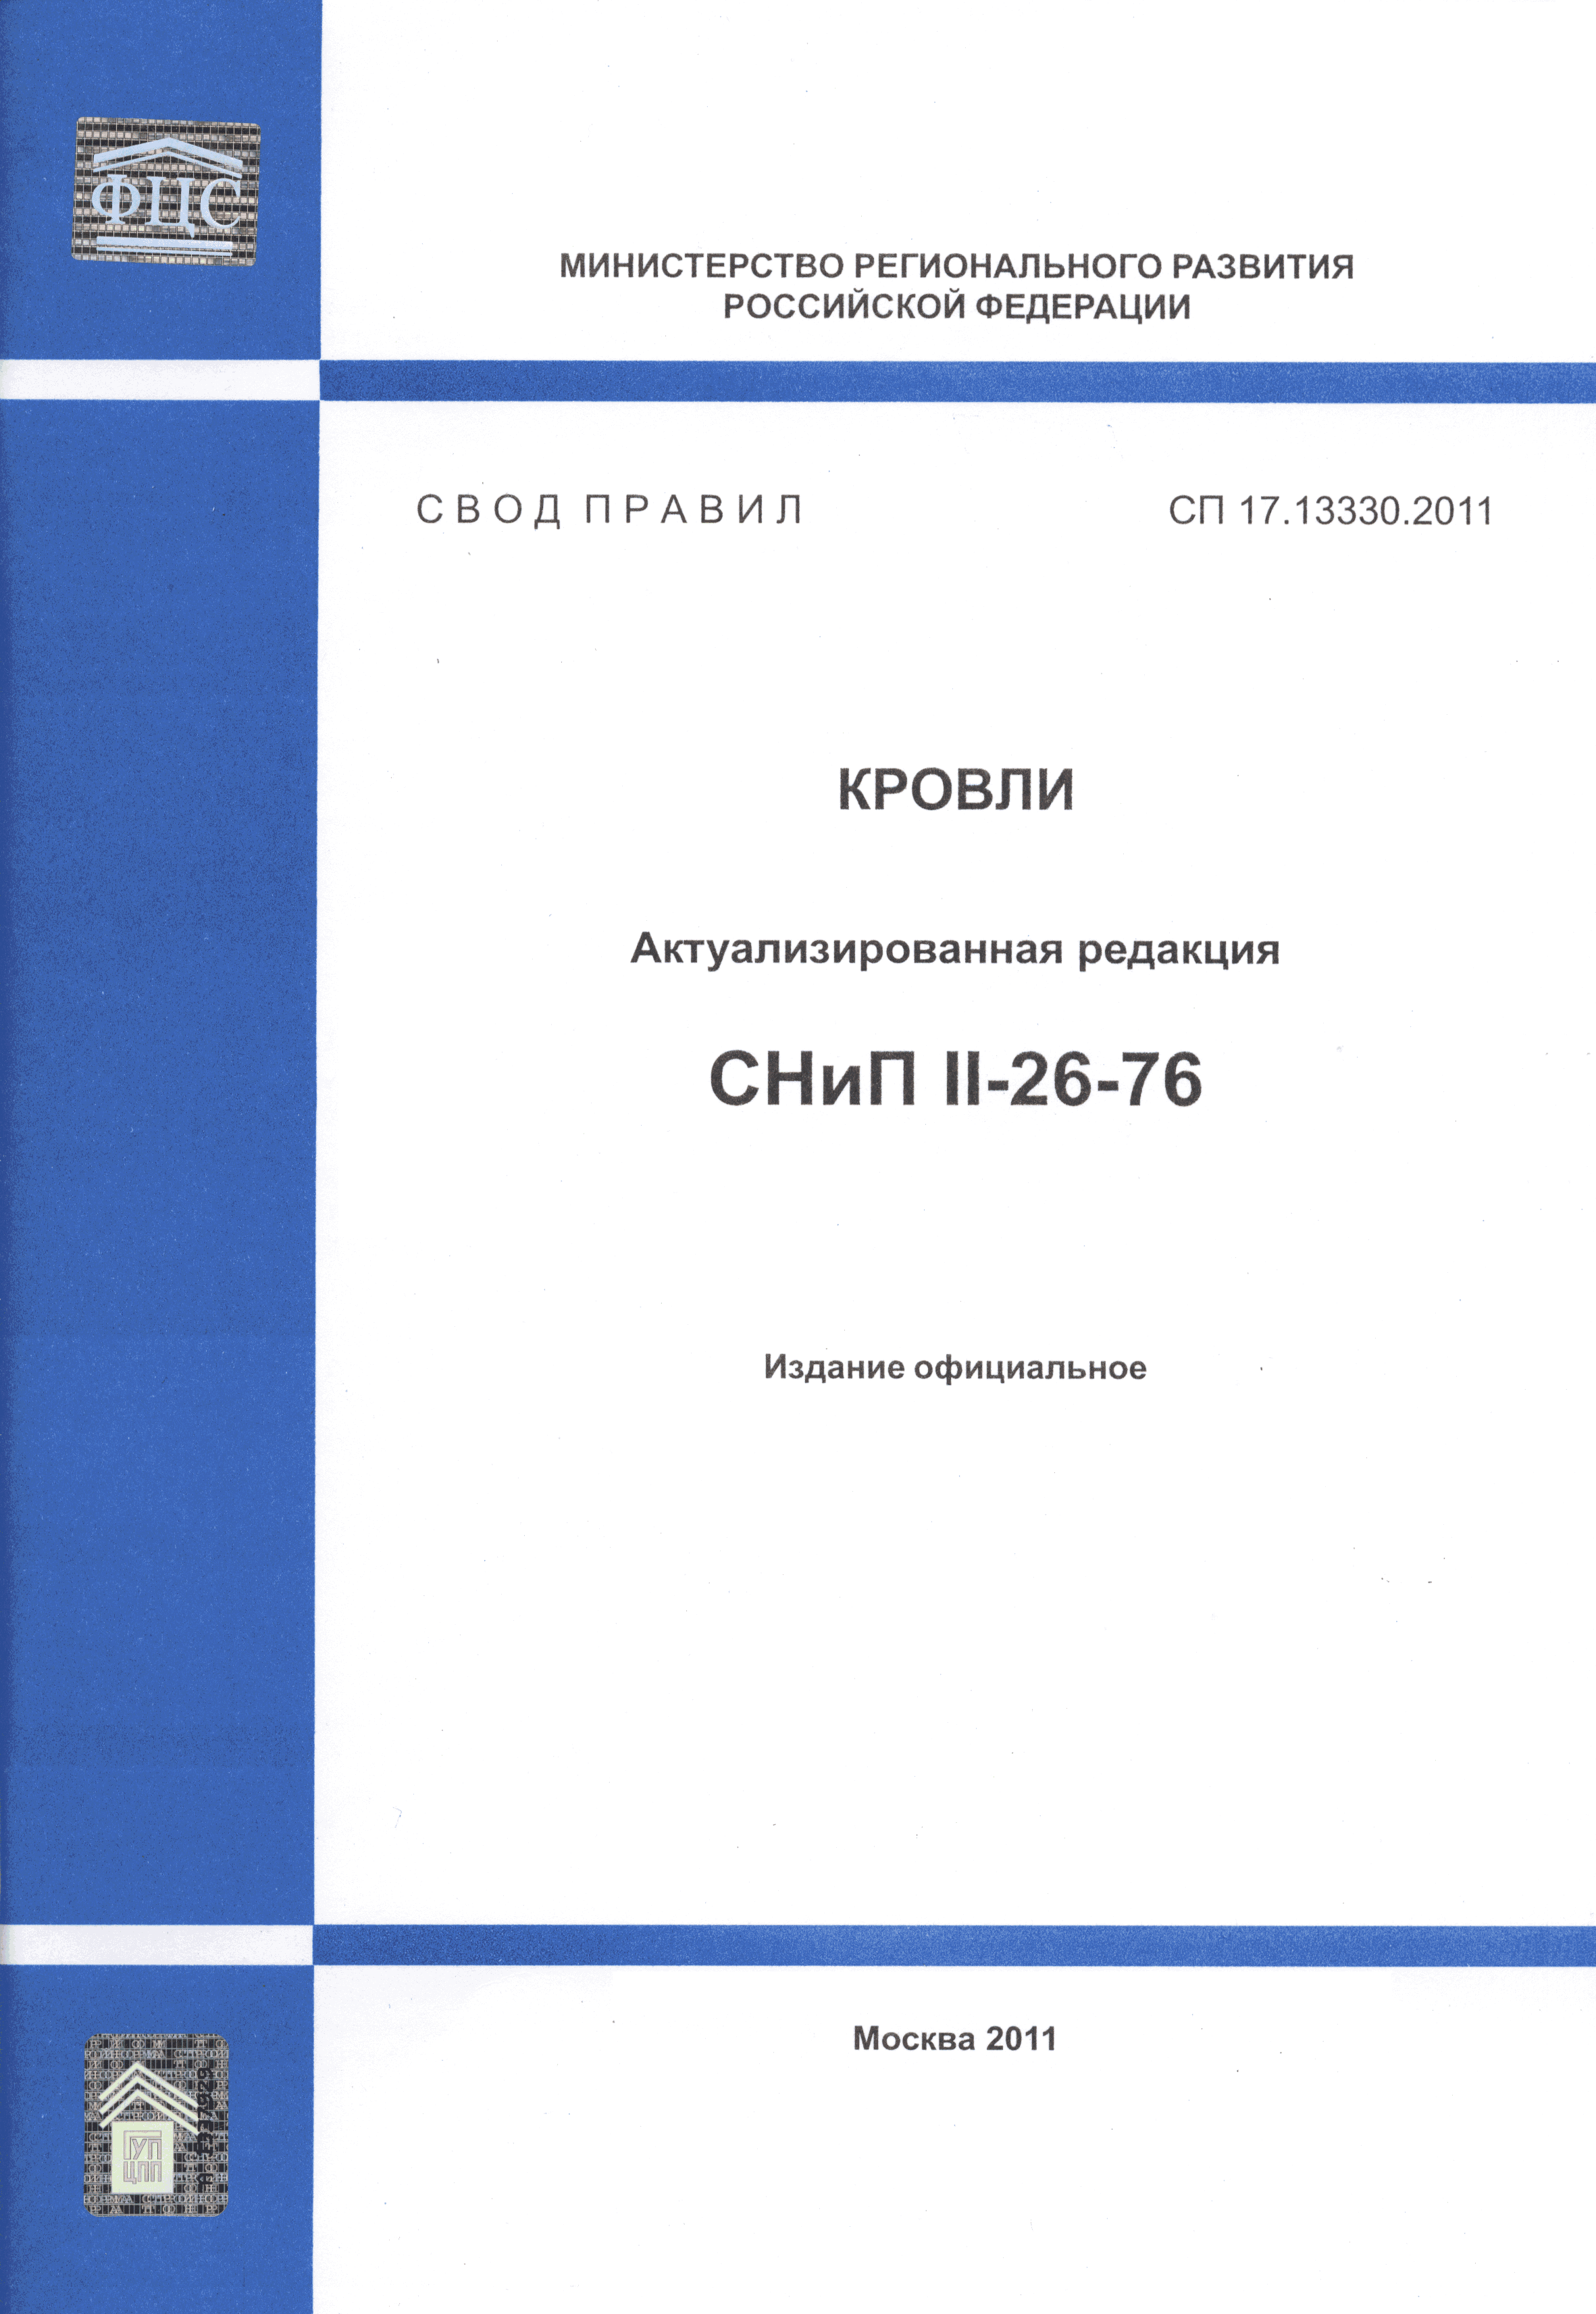 СП 17.13330.2011